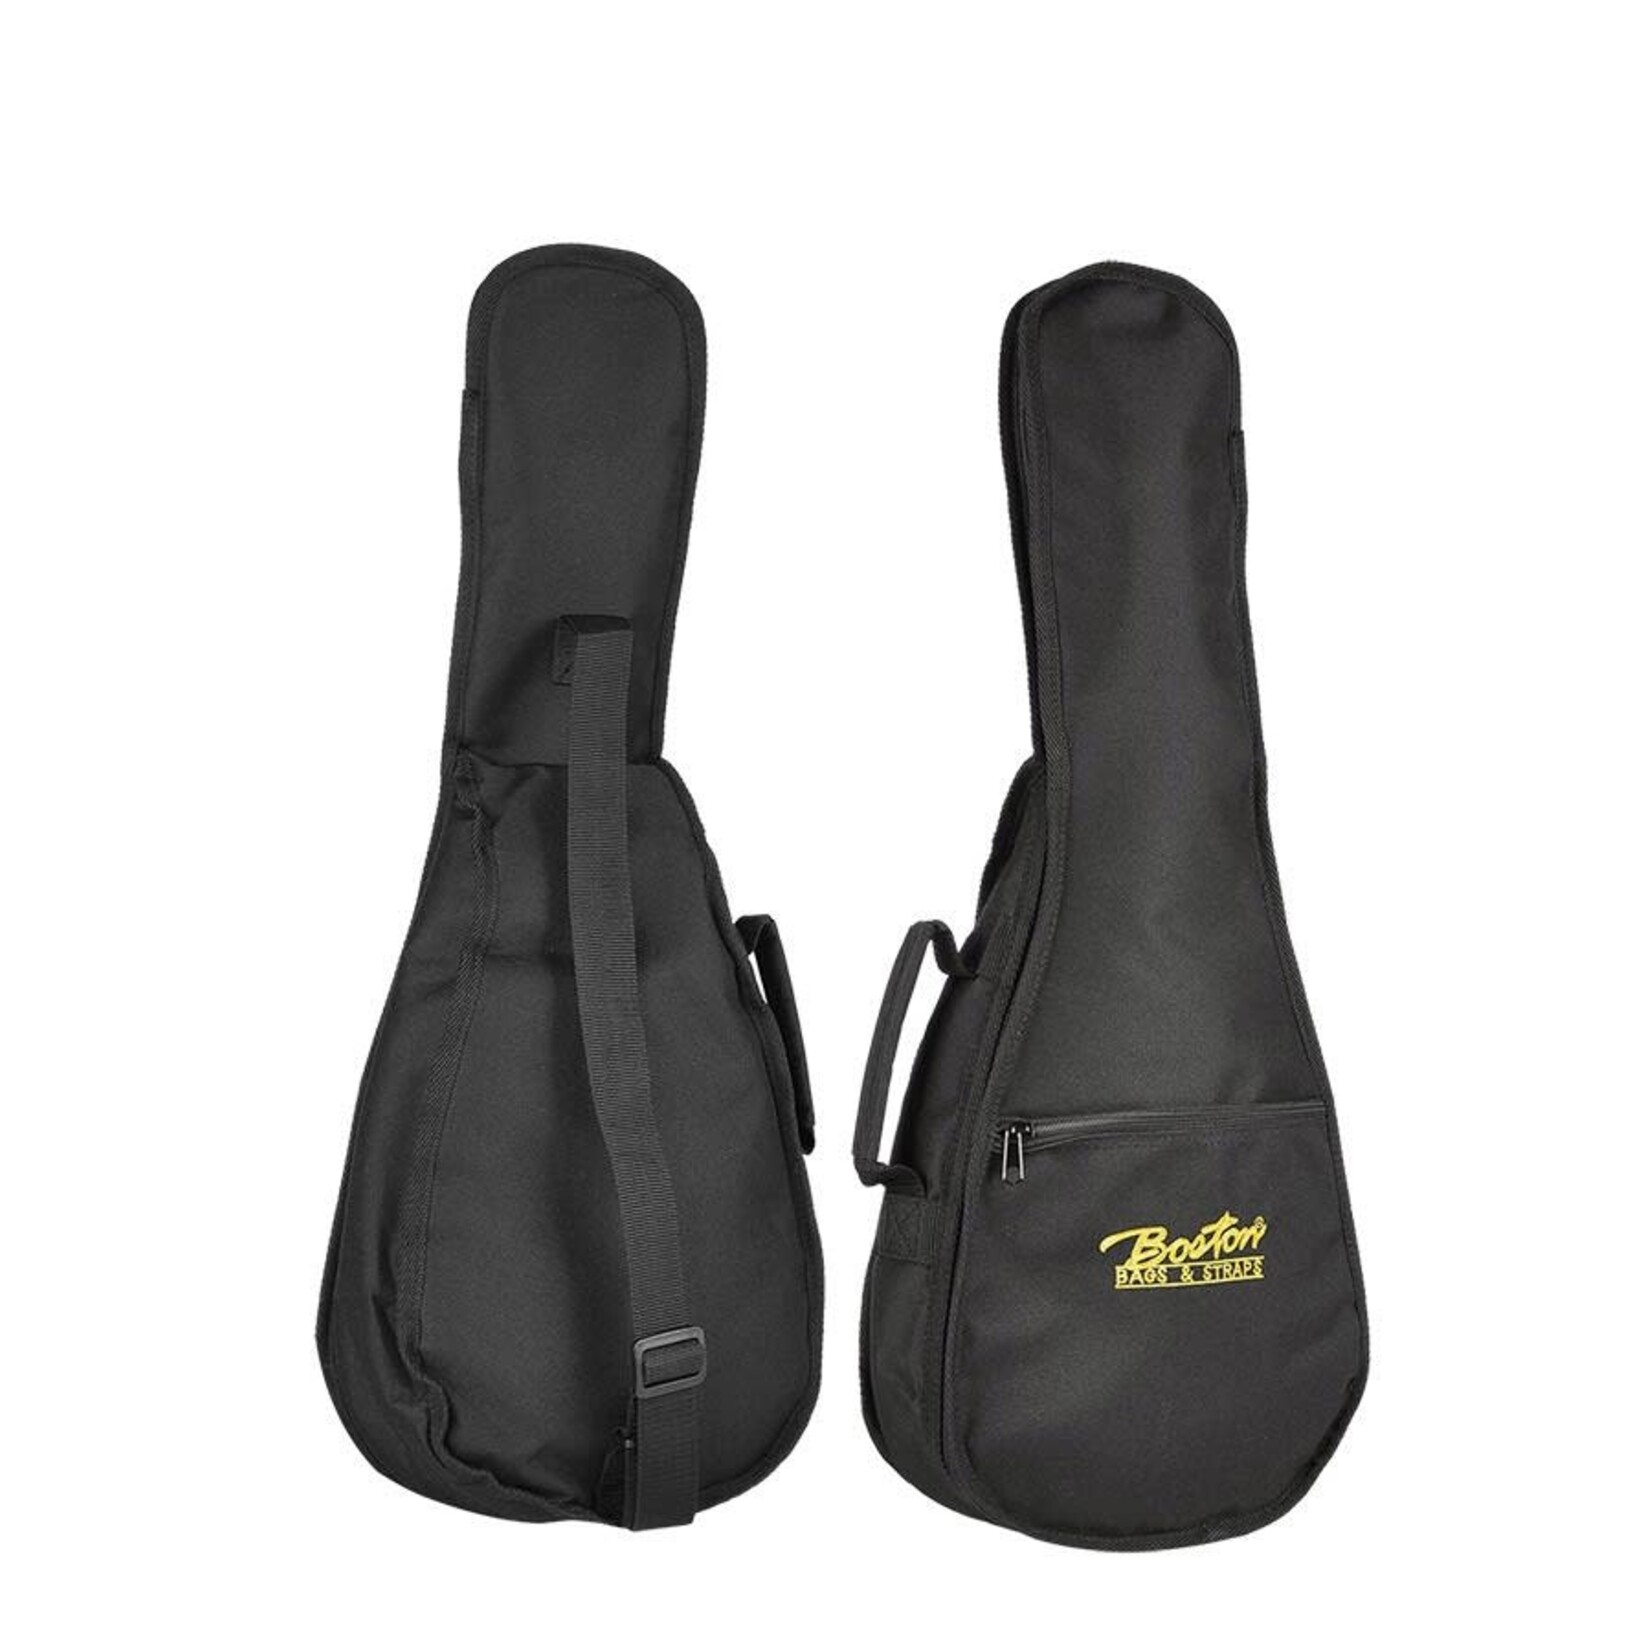 Boston Boston gig bag for tenor ukulele, 6 mm padding, nylon, 1 strap, accessory pocket